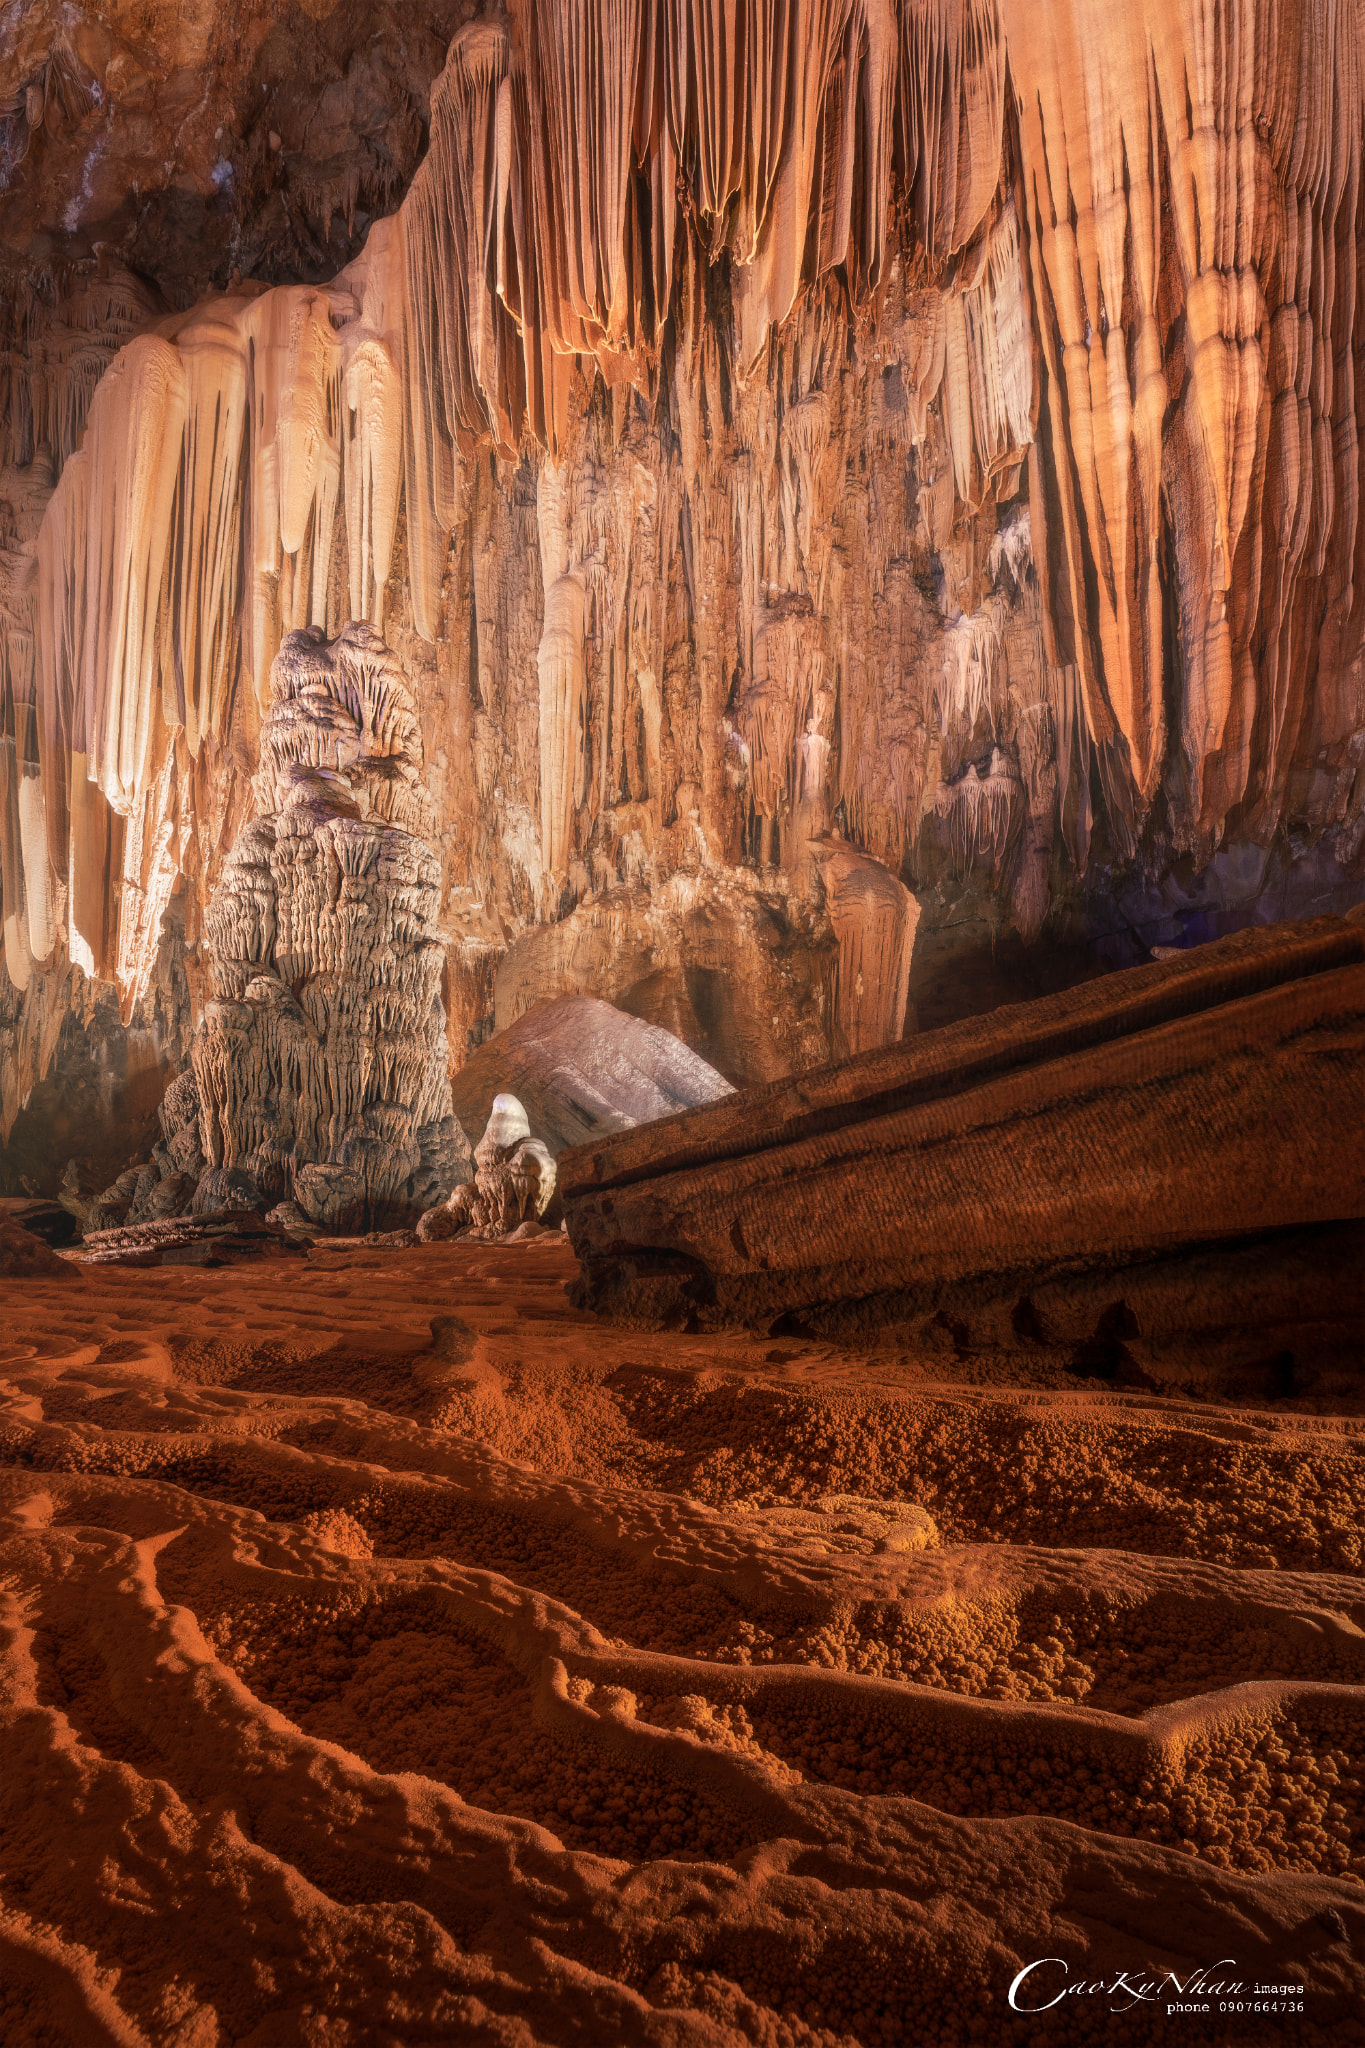 Gợi ý lịch trình 3 ngày 2 đêm trải nghiệm Hung Thoòng - chuỗi hang động tự nhiên mới ở Quảng Bình - Ảnh 3.